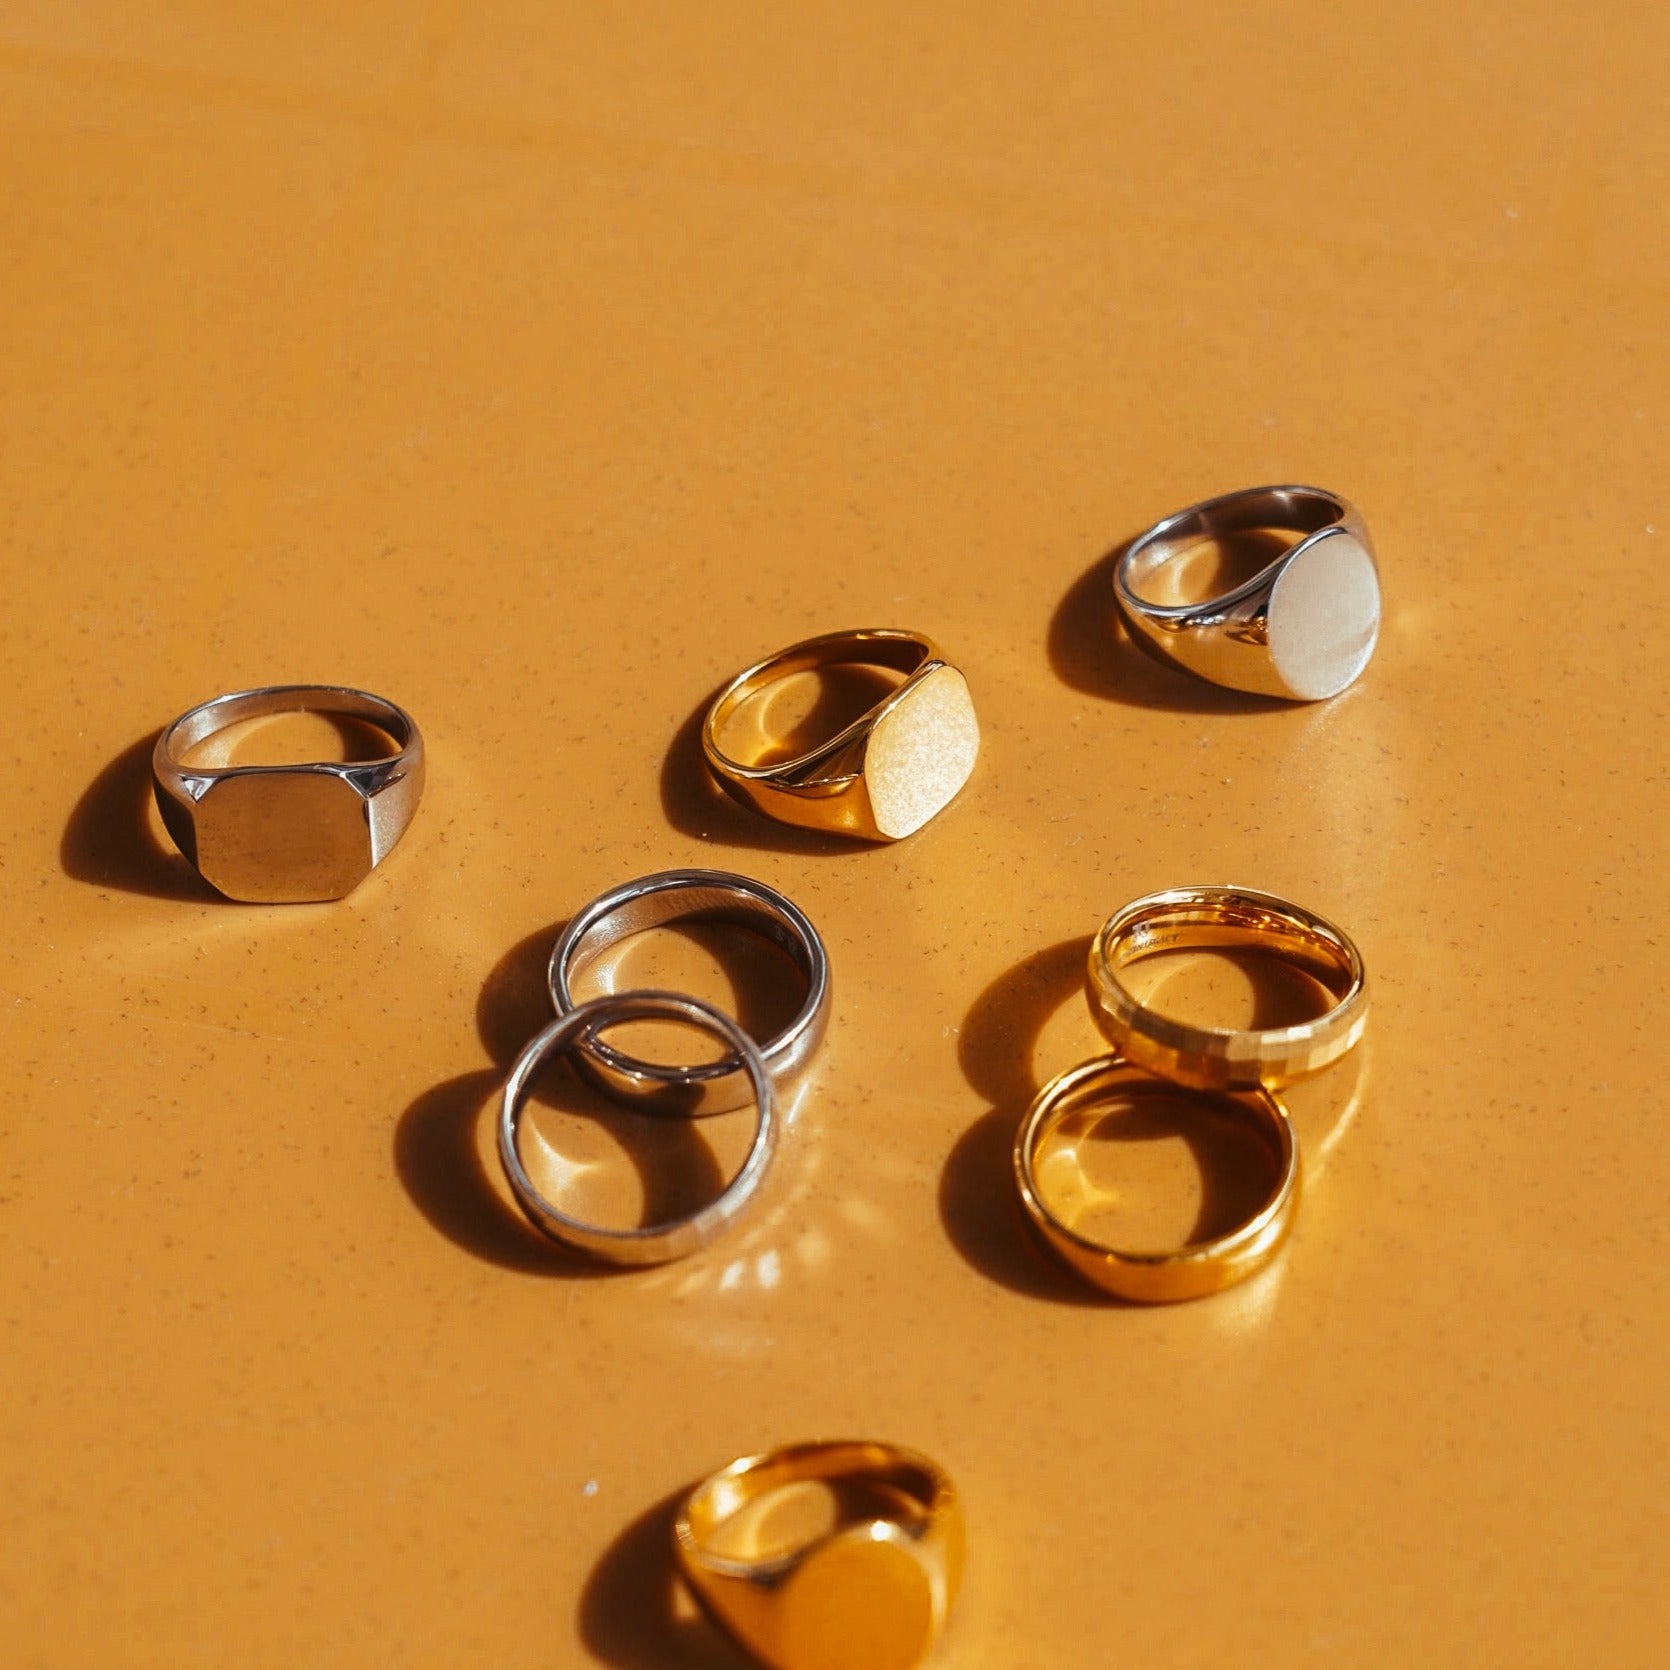 Classic Signature - Gold-toned ring